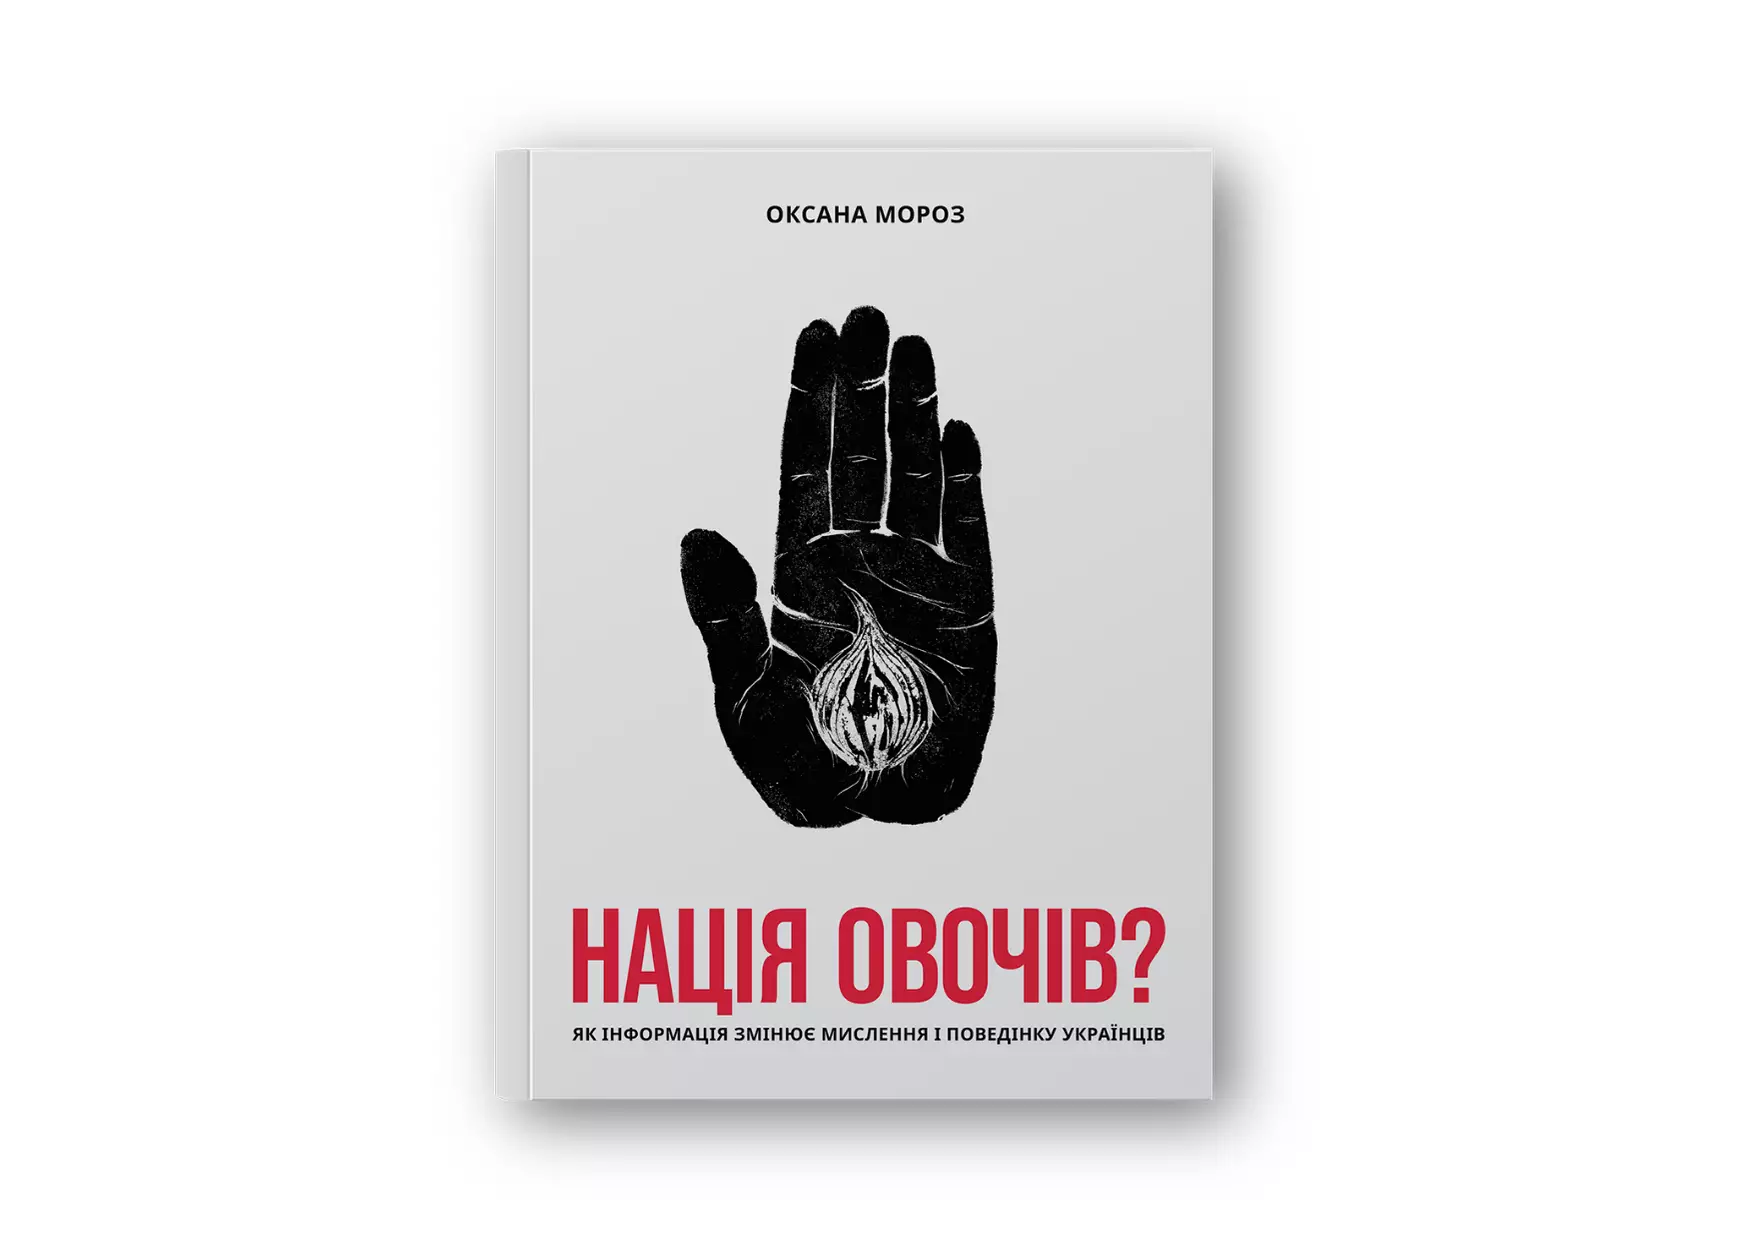 О чем книга "Нация овощей? Как информация меняет мышление и поведение украинцев"